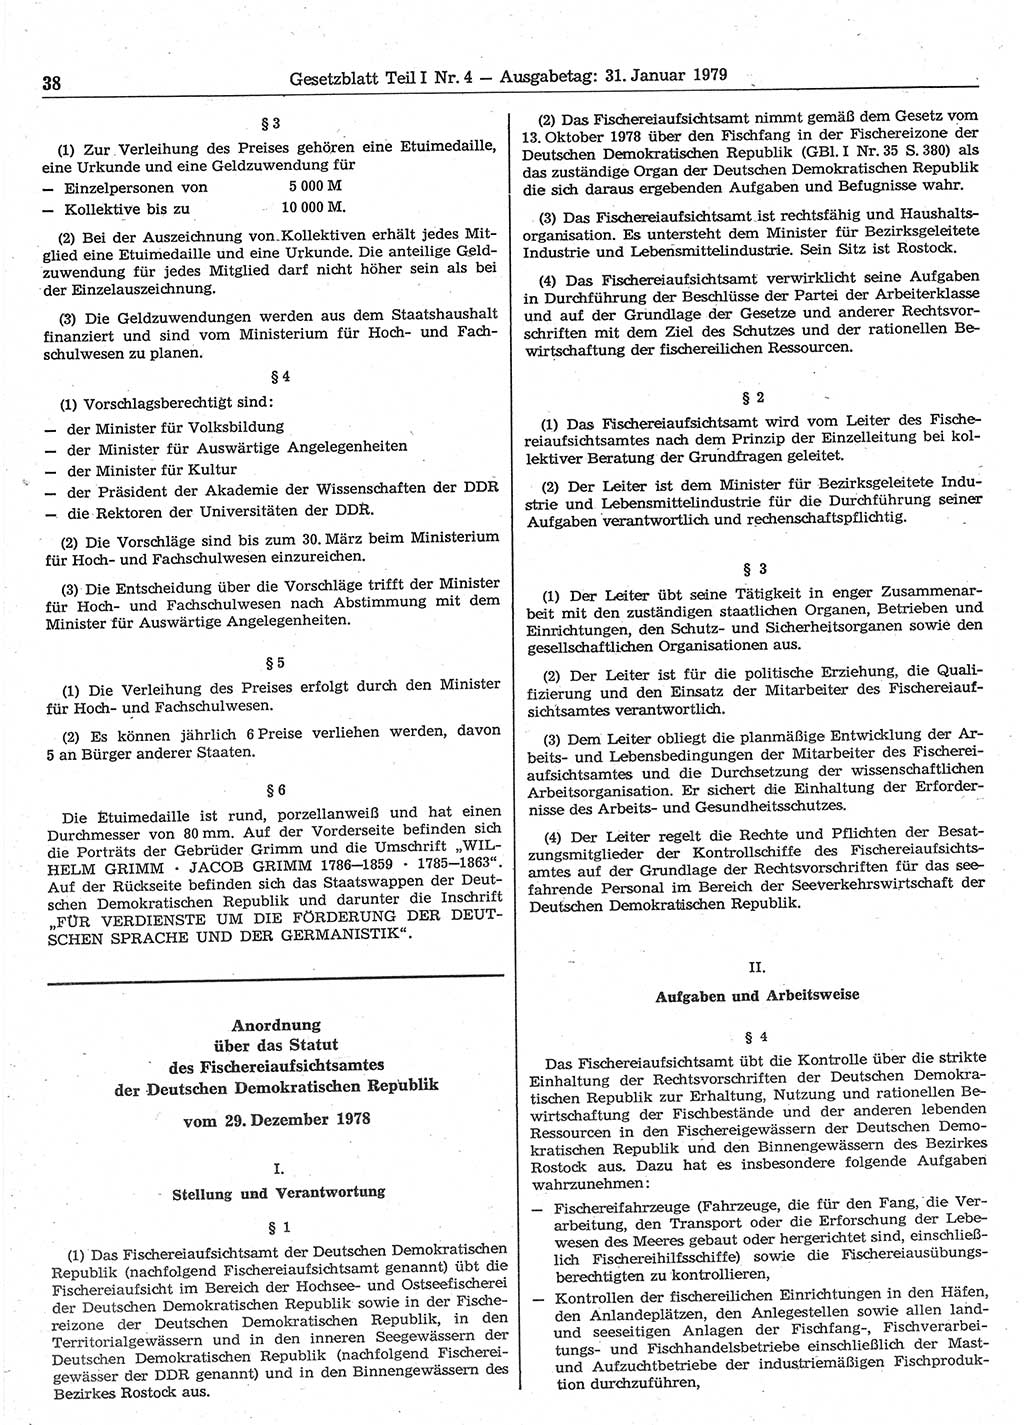 Gesetzblatt (GBl.) der Deutschen Demokratischen Republik (DDR) Teil Ⅰ 1979, Seite 38 (GBl. DDR Ⅰ 1979, S. 38)